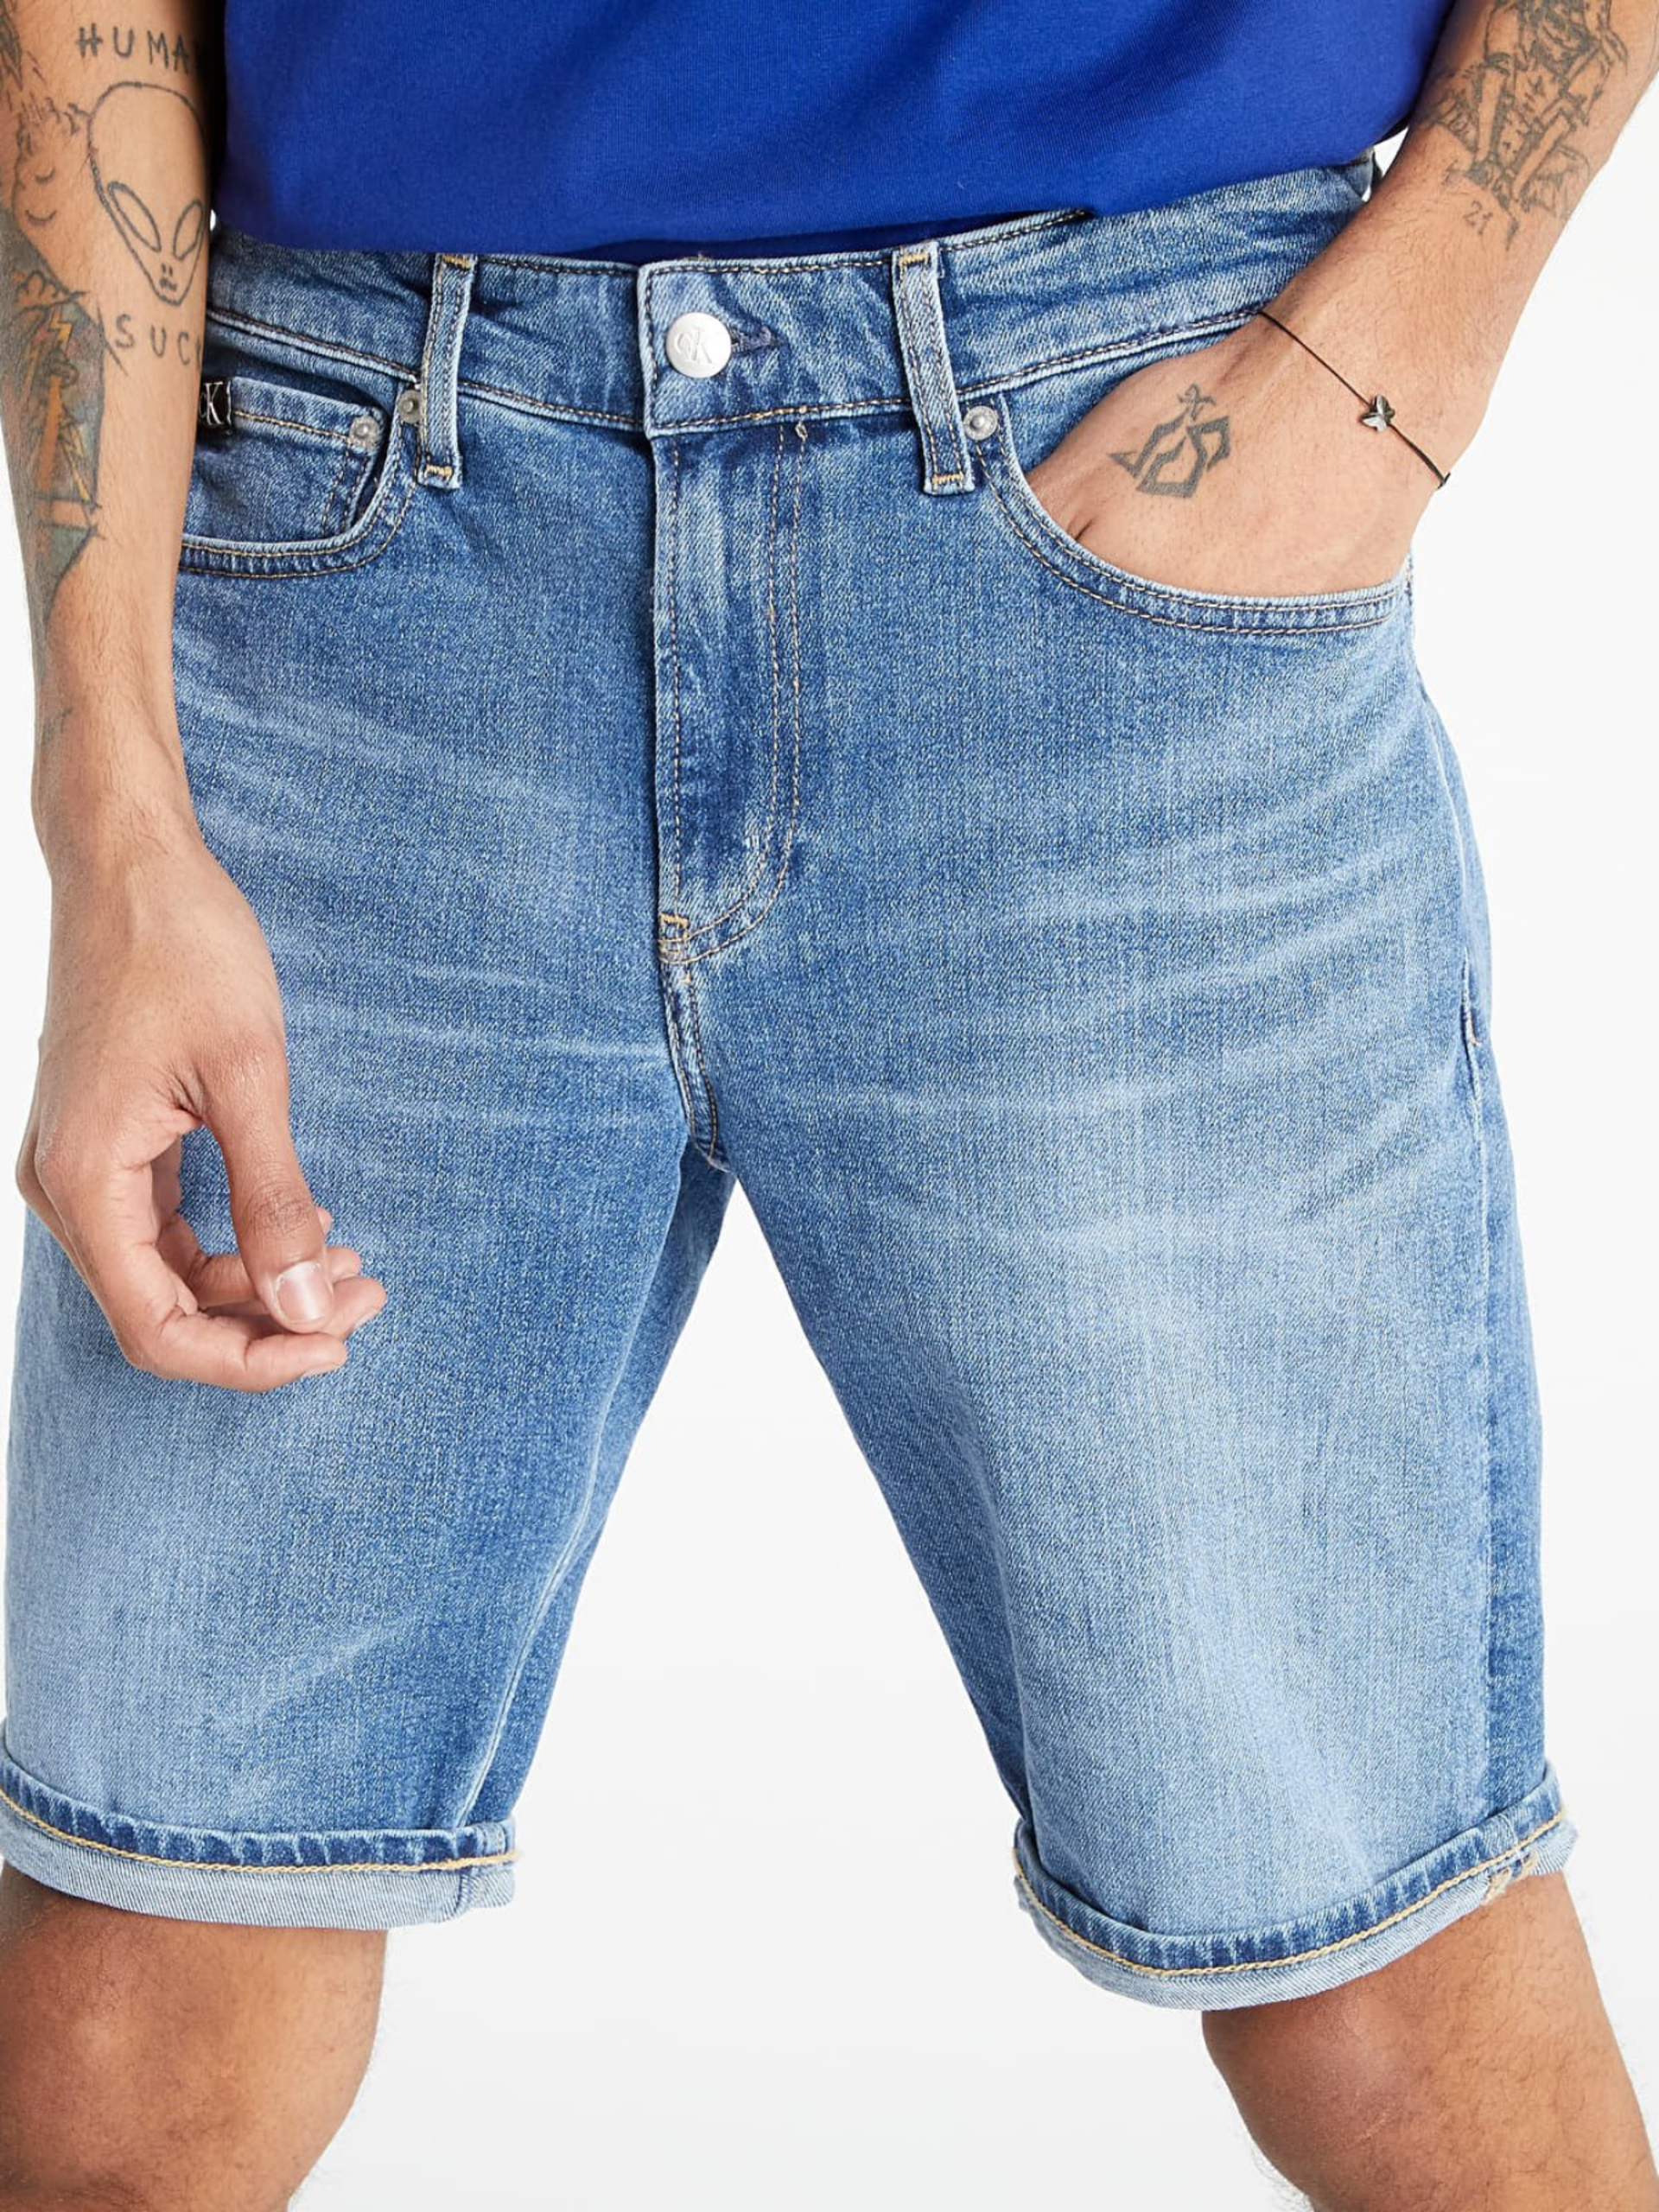 Calvin Klein pánské džínové modré šortky - 36/NI (1BJ)